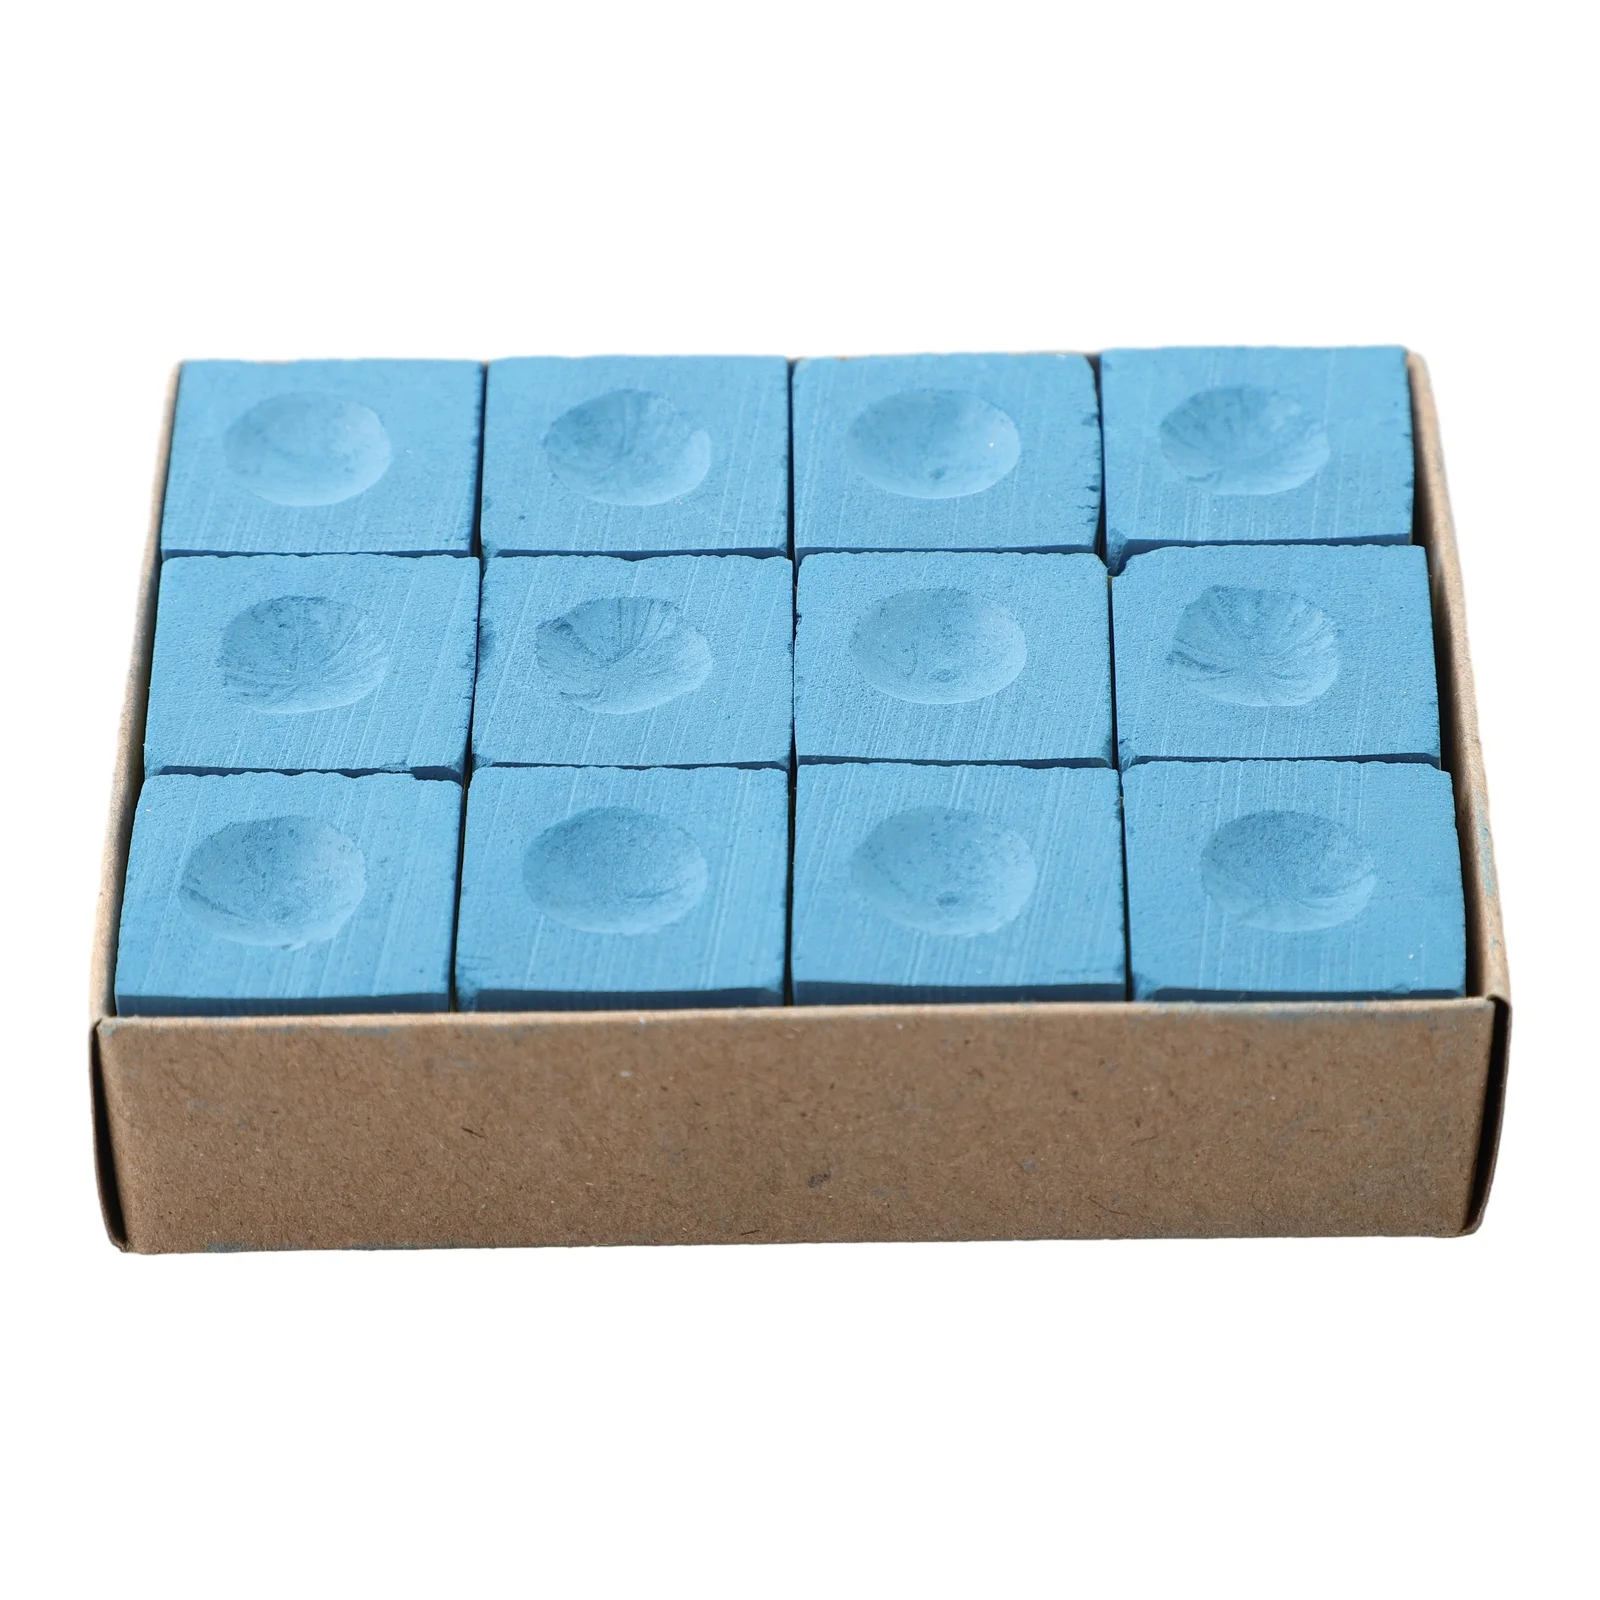 Прочные Практичные кубики Мелки Кубики для настольного бильярда Мел для бильярдного кия Мел для бильярдного кия Мел для настольного бильярда высокого качества